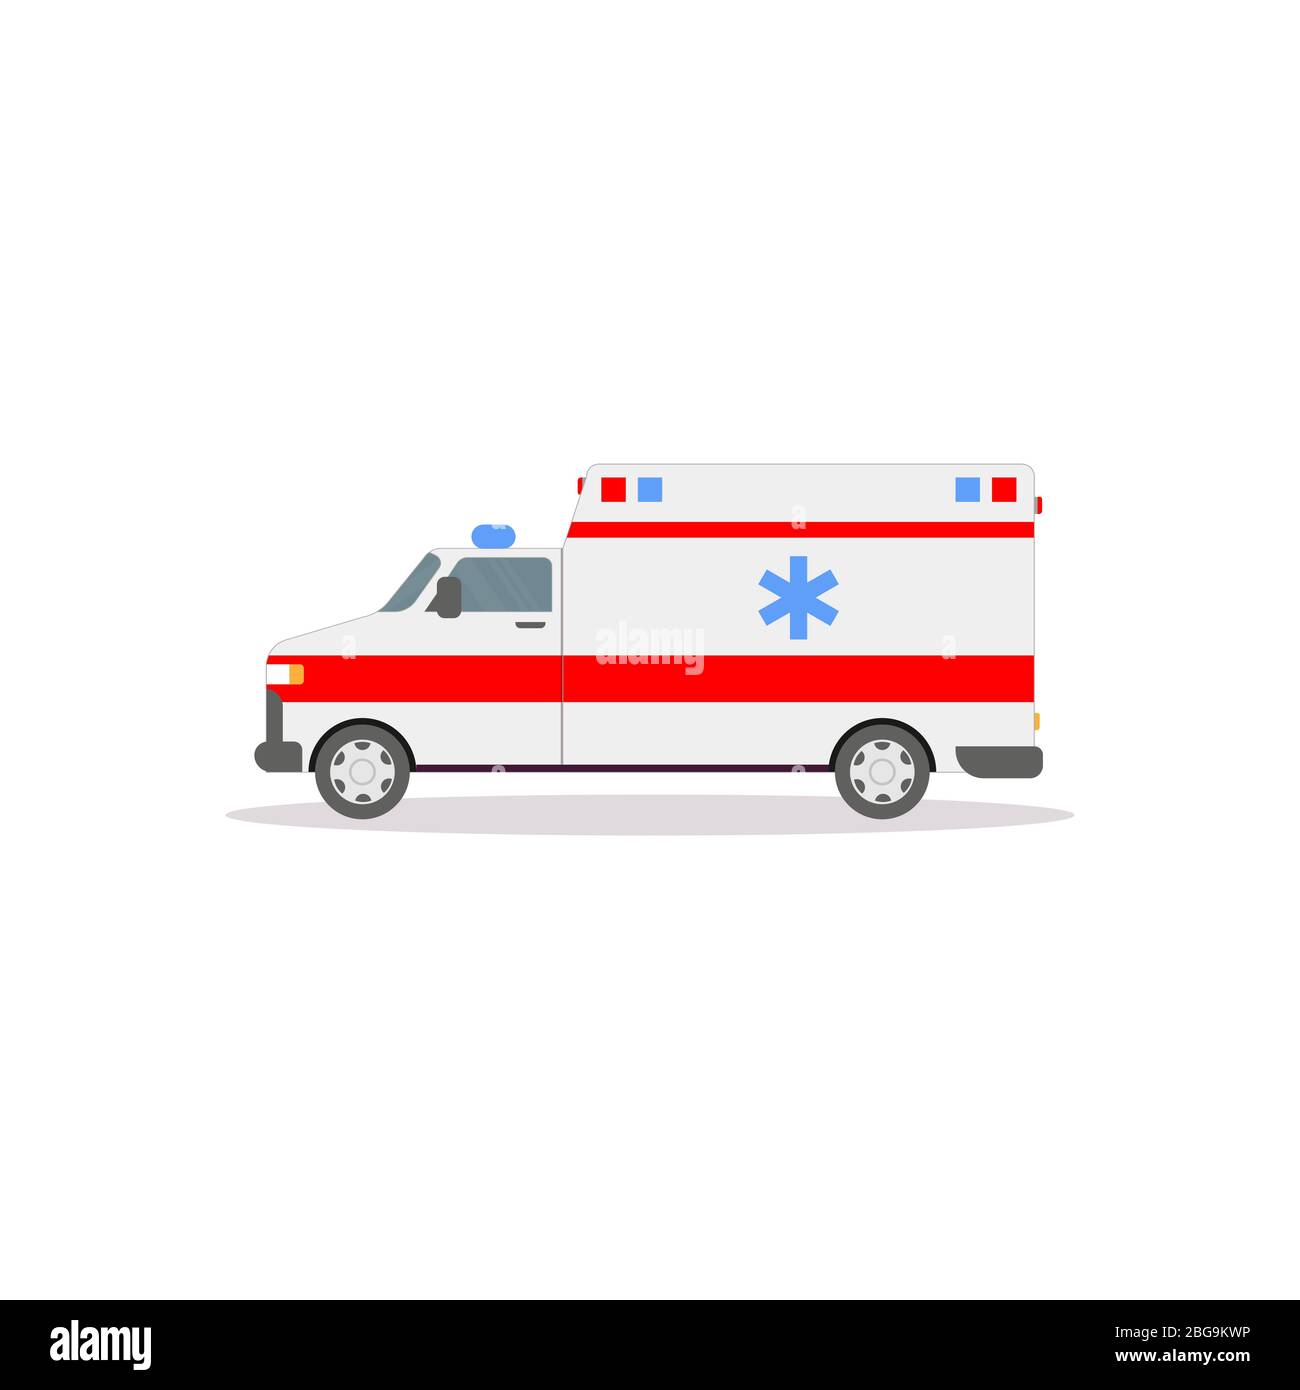 Vue latérale de la voiture d'ambulance avec lumières. Illustration vectorielle de style plat. Bannière de véhicule et de transport. Voiture américaine ambulancier moderne. Camionnette de premiers secours Illustration de Vecteur